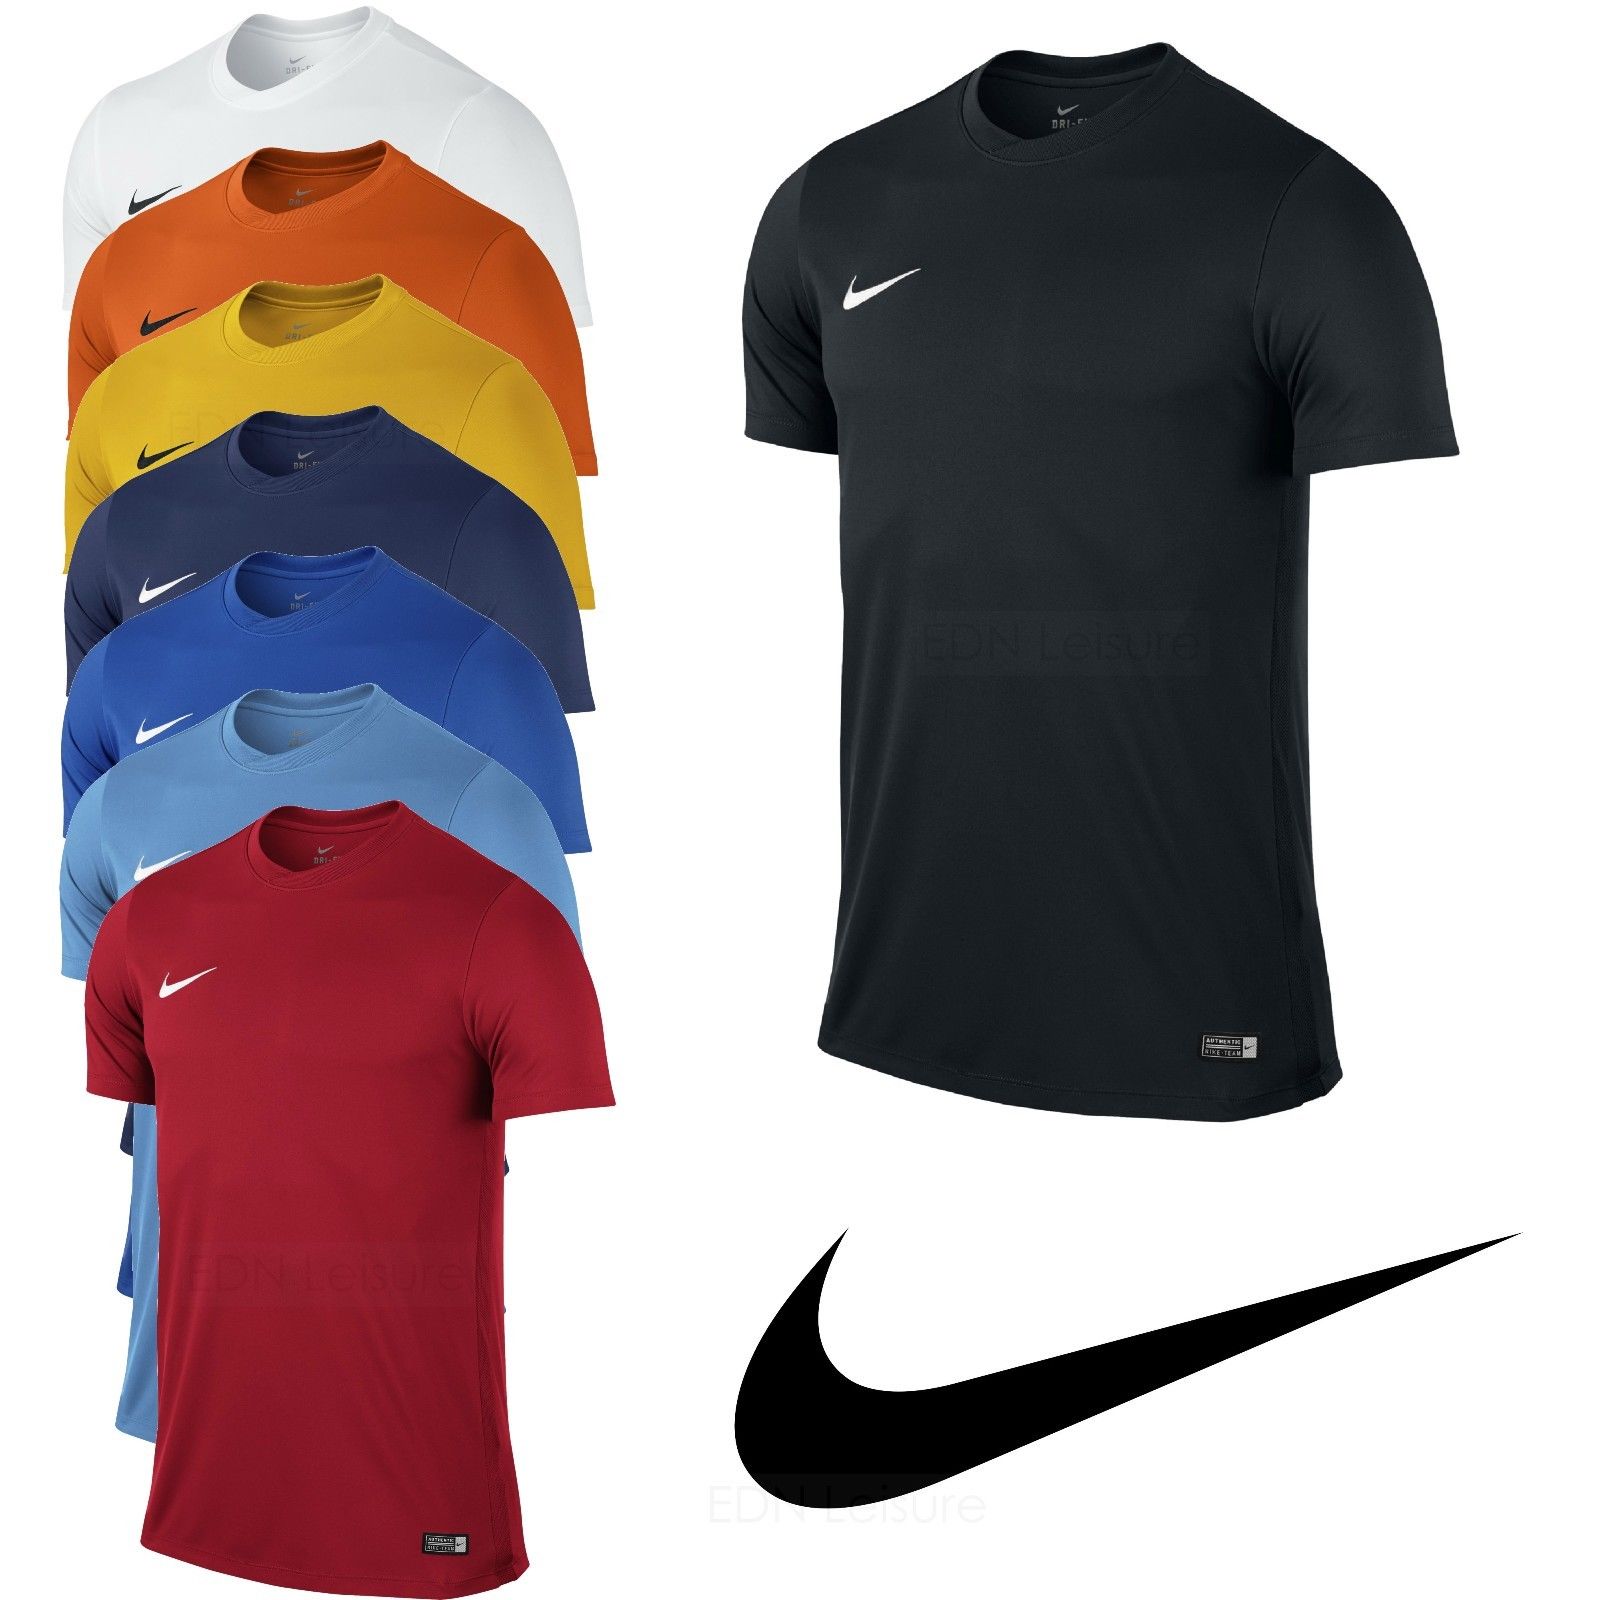 Nike Mens T Shirt Football Training Top Gym Sport Dri Fit Park Size S M L XL XXL